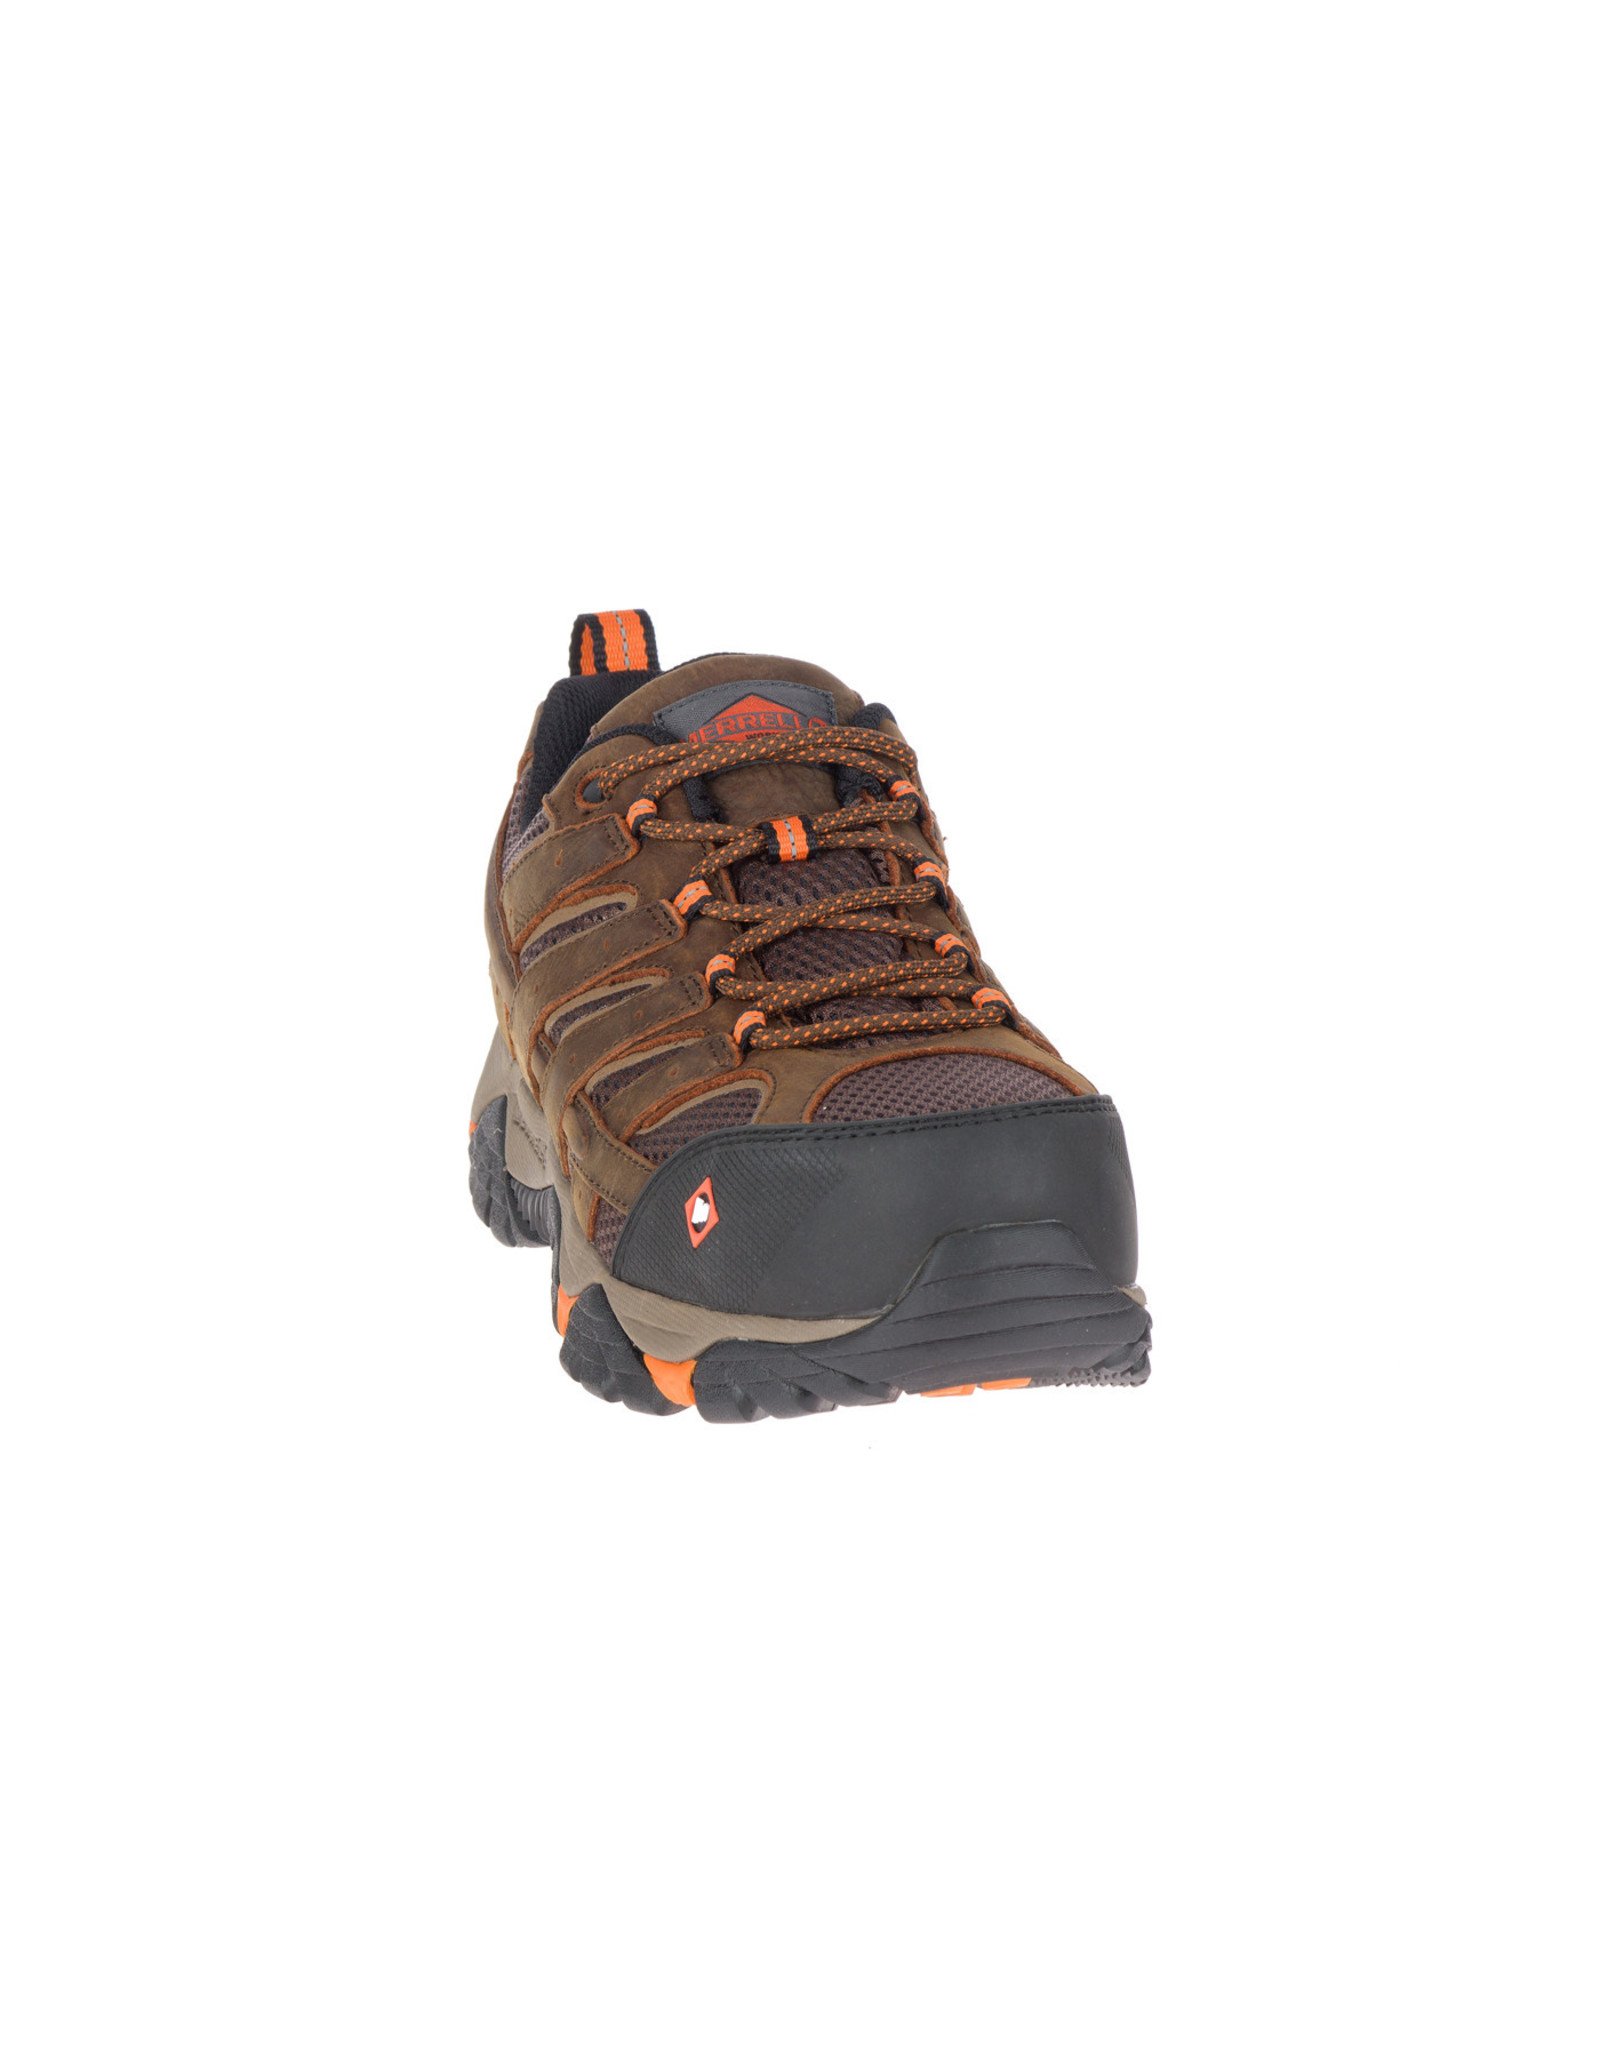 Merrell Men's Moab Vertex Vent J11119 Composite Toe Work Shoes - Nelson ...